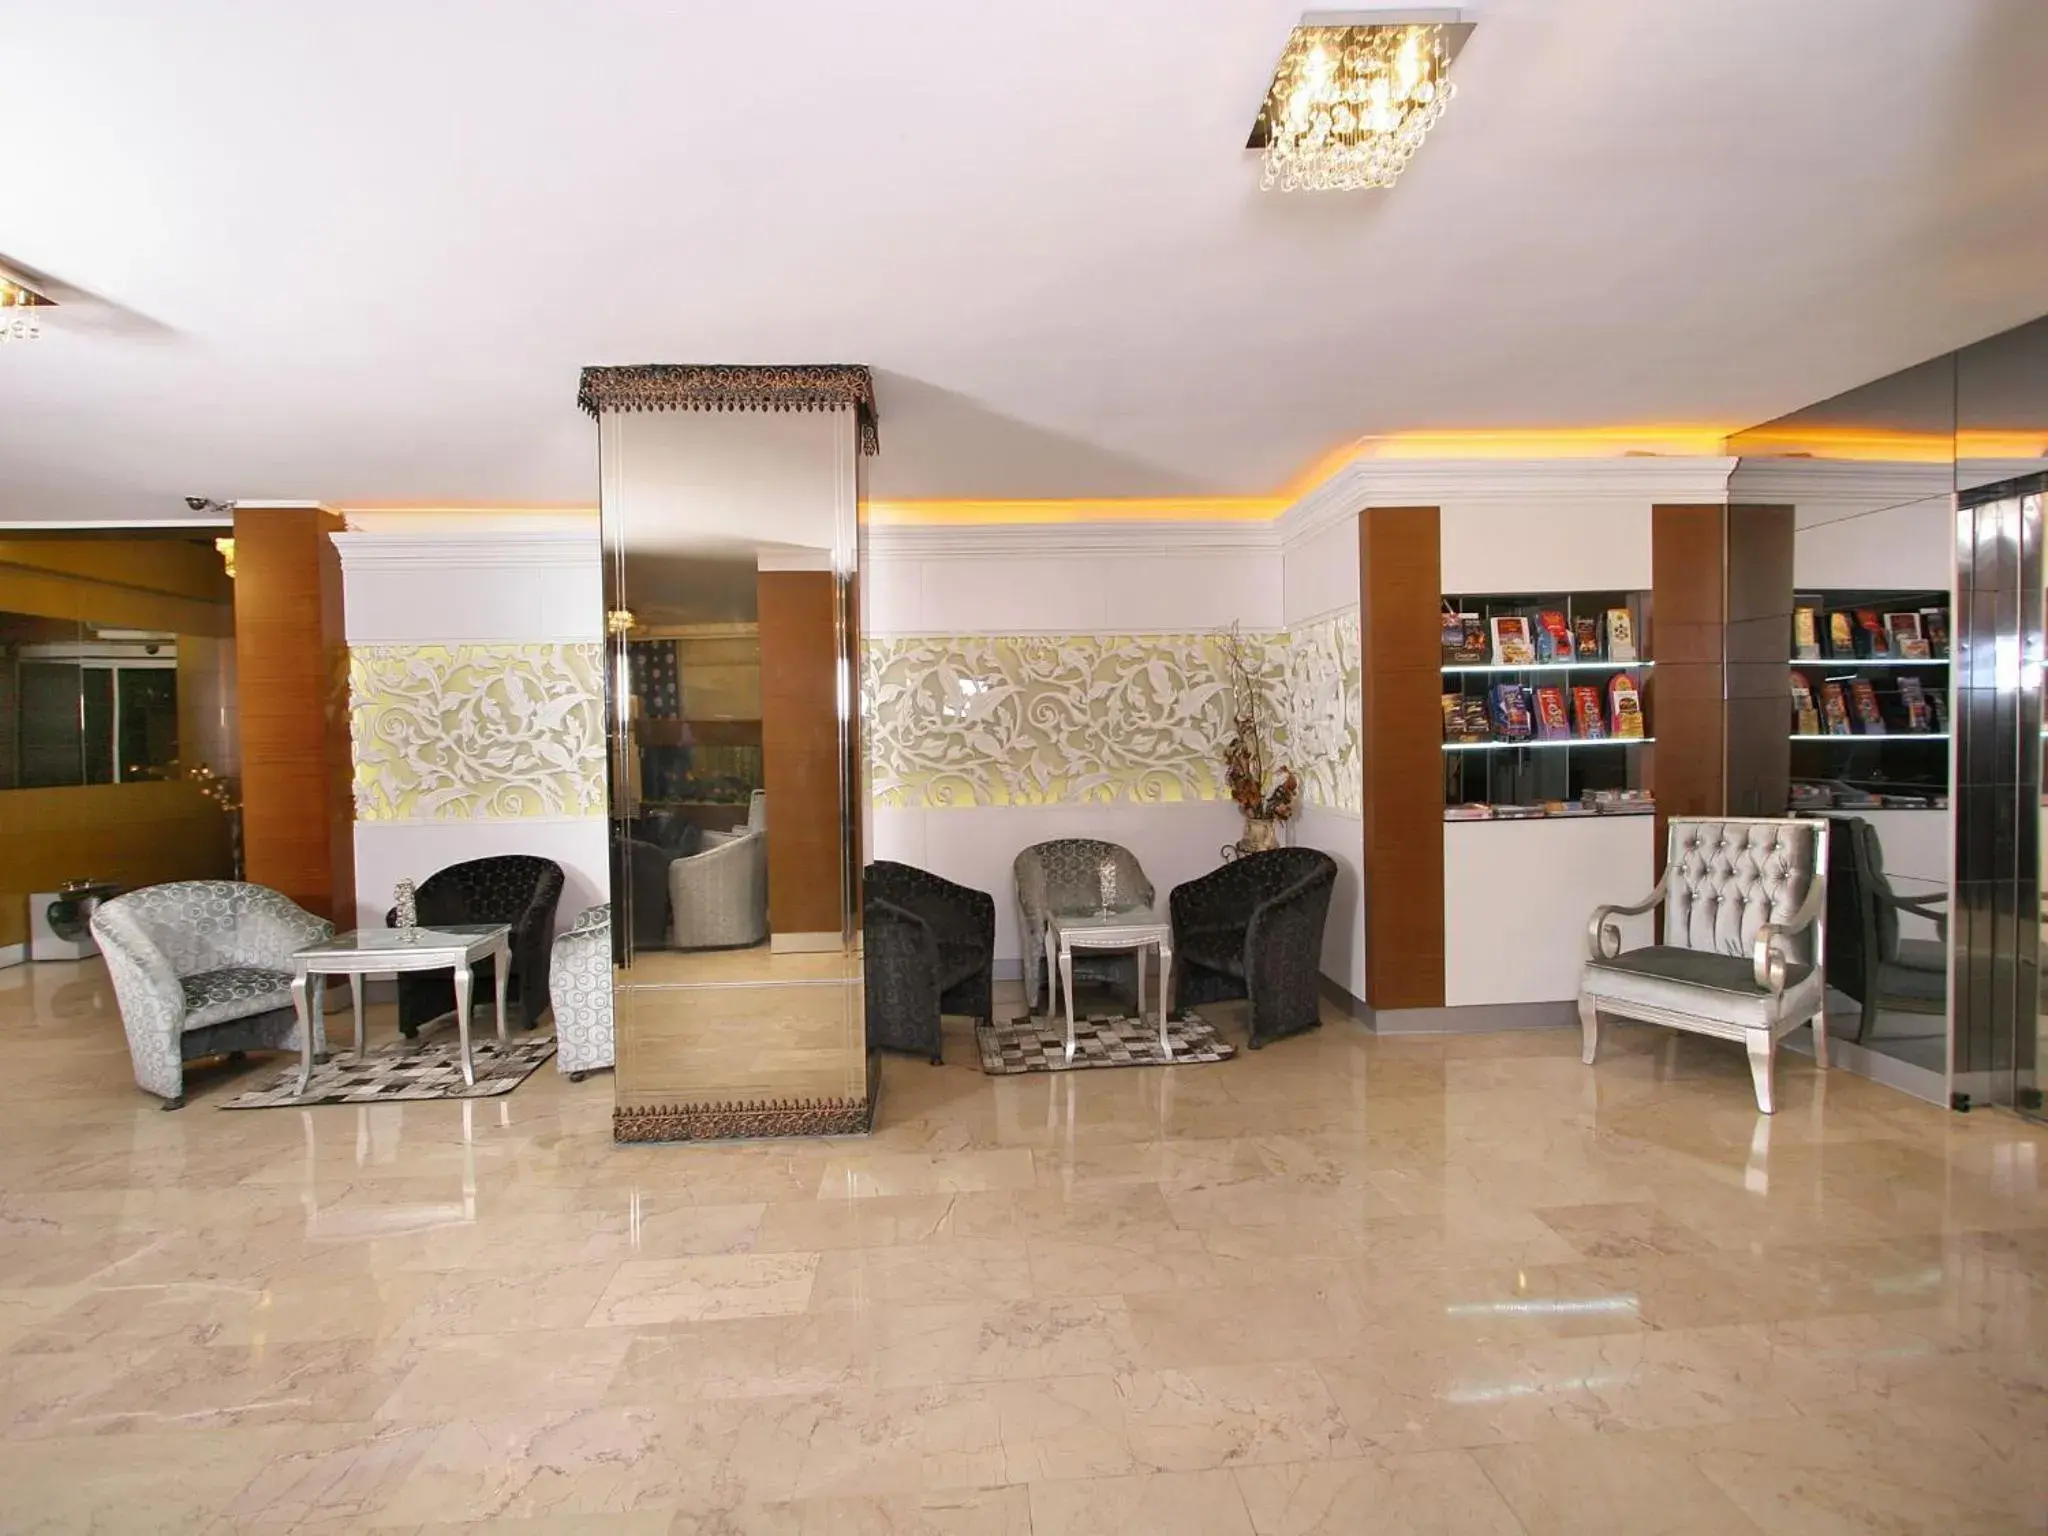 Lobby or reception in Maya Hotel